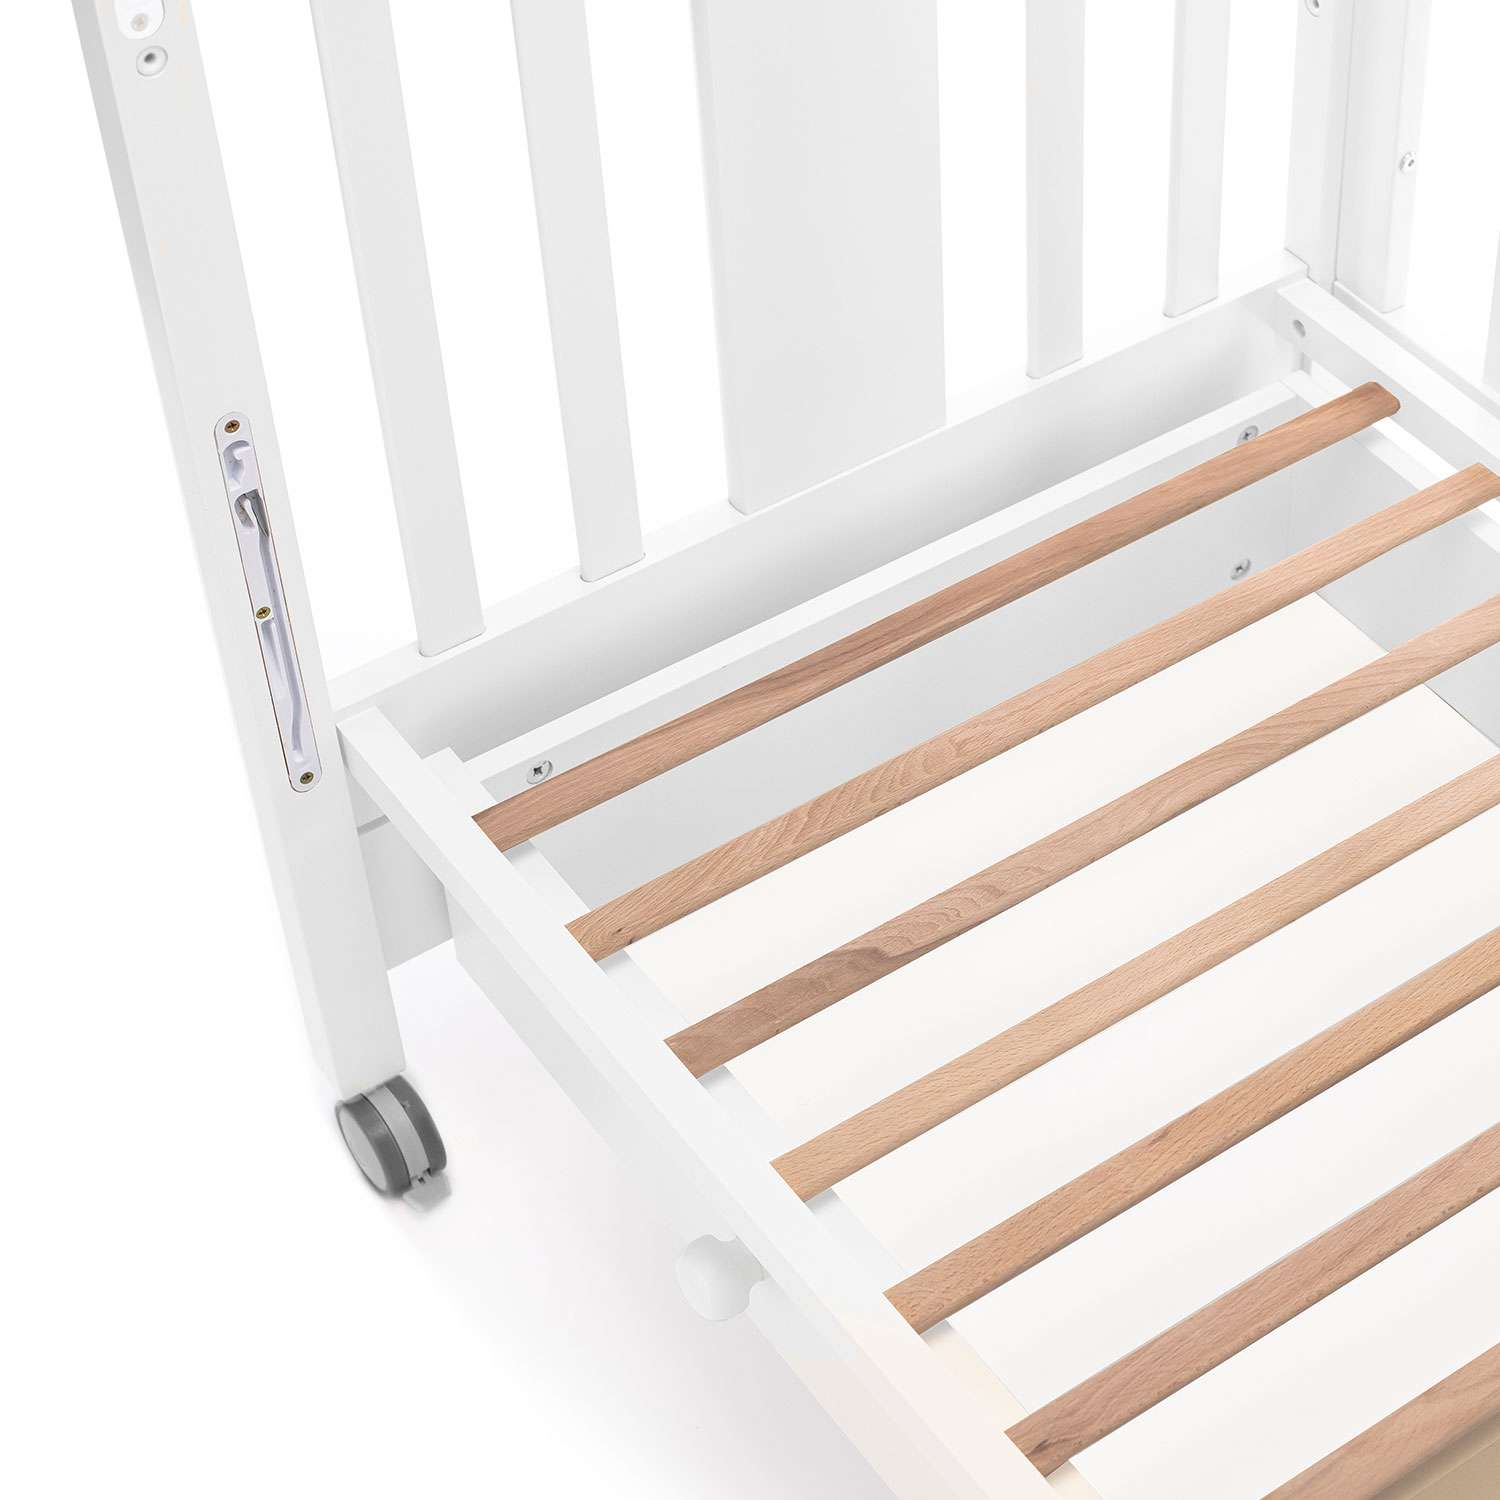 Детская кроватка Nuovita прямоугольная, без маятника (белый) - фото 21